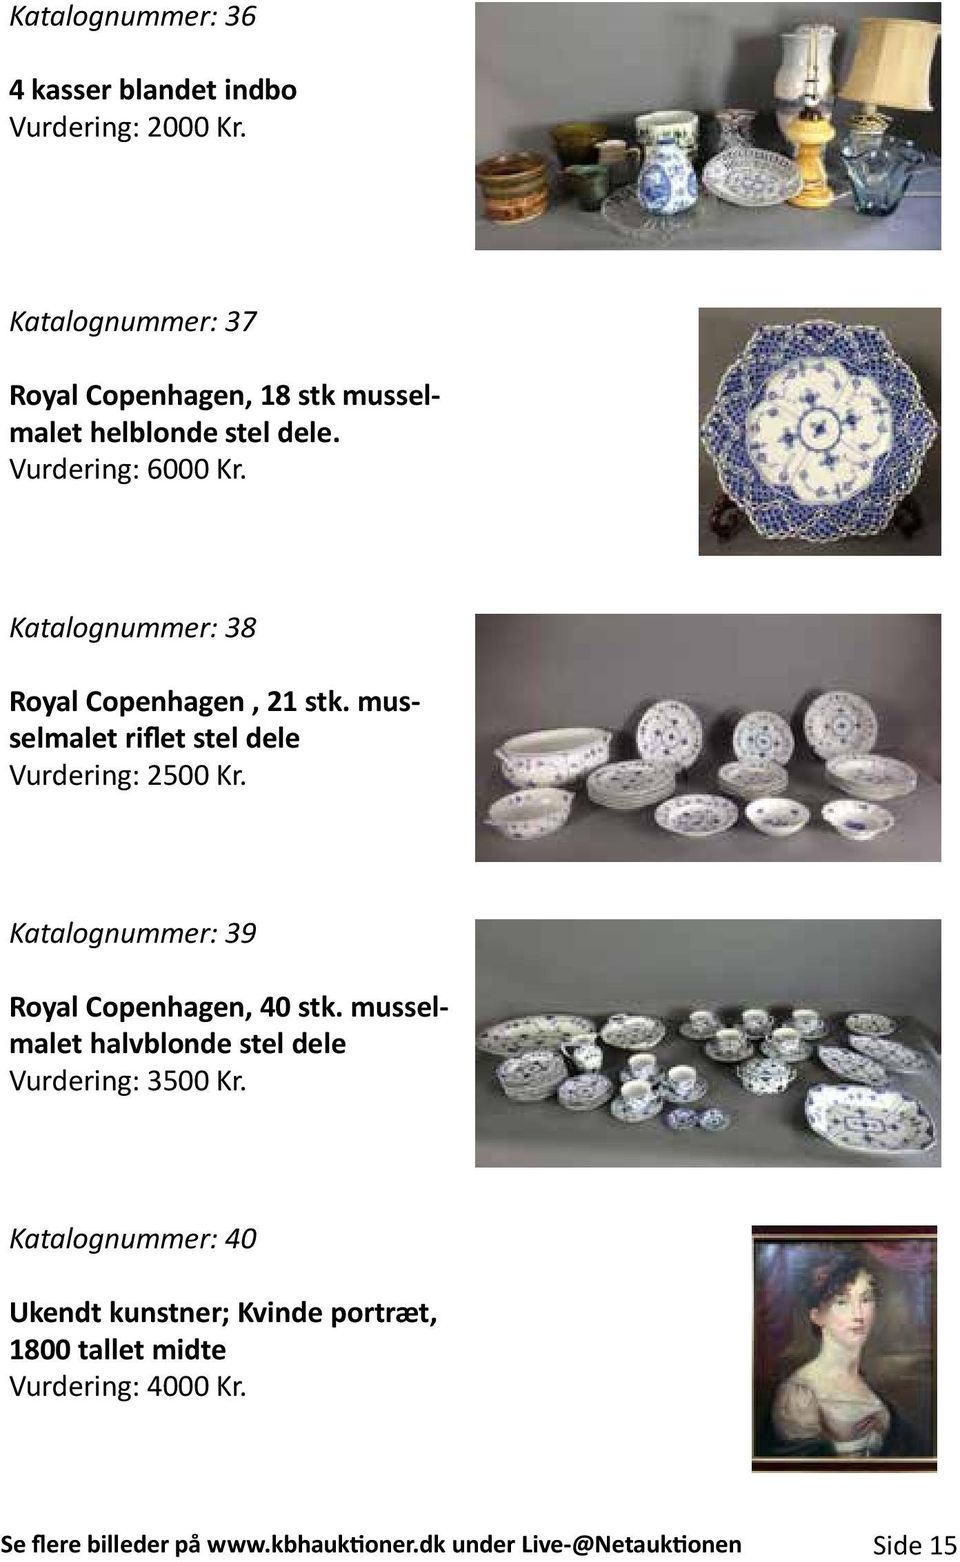 Katalognummer: 38 Royal Copenhagen, 21 stk. musselmalet riflet stel dele Vurdering: 2500 Kr.